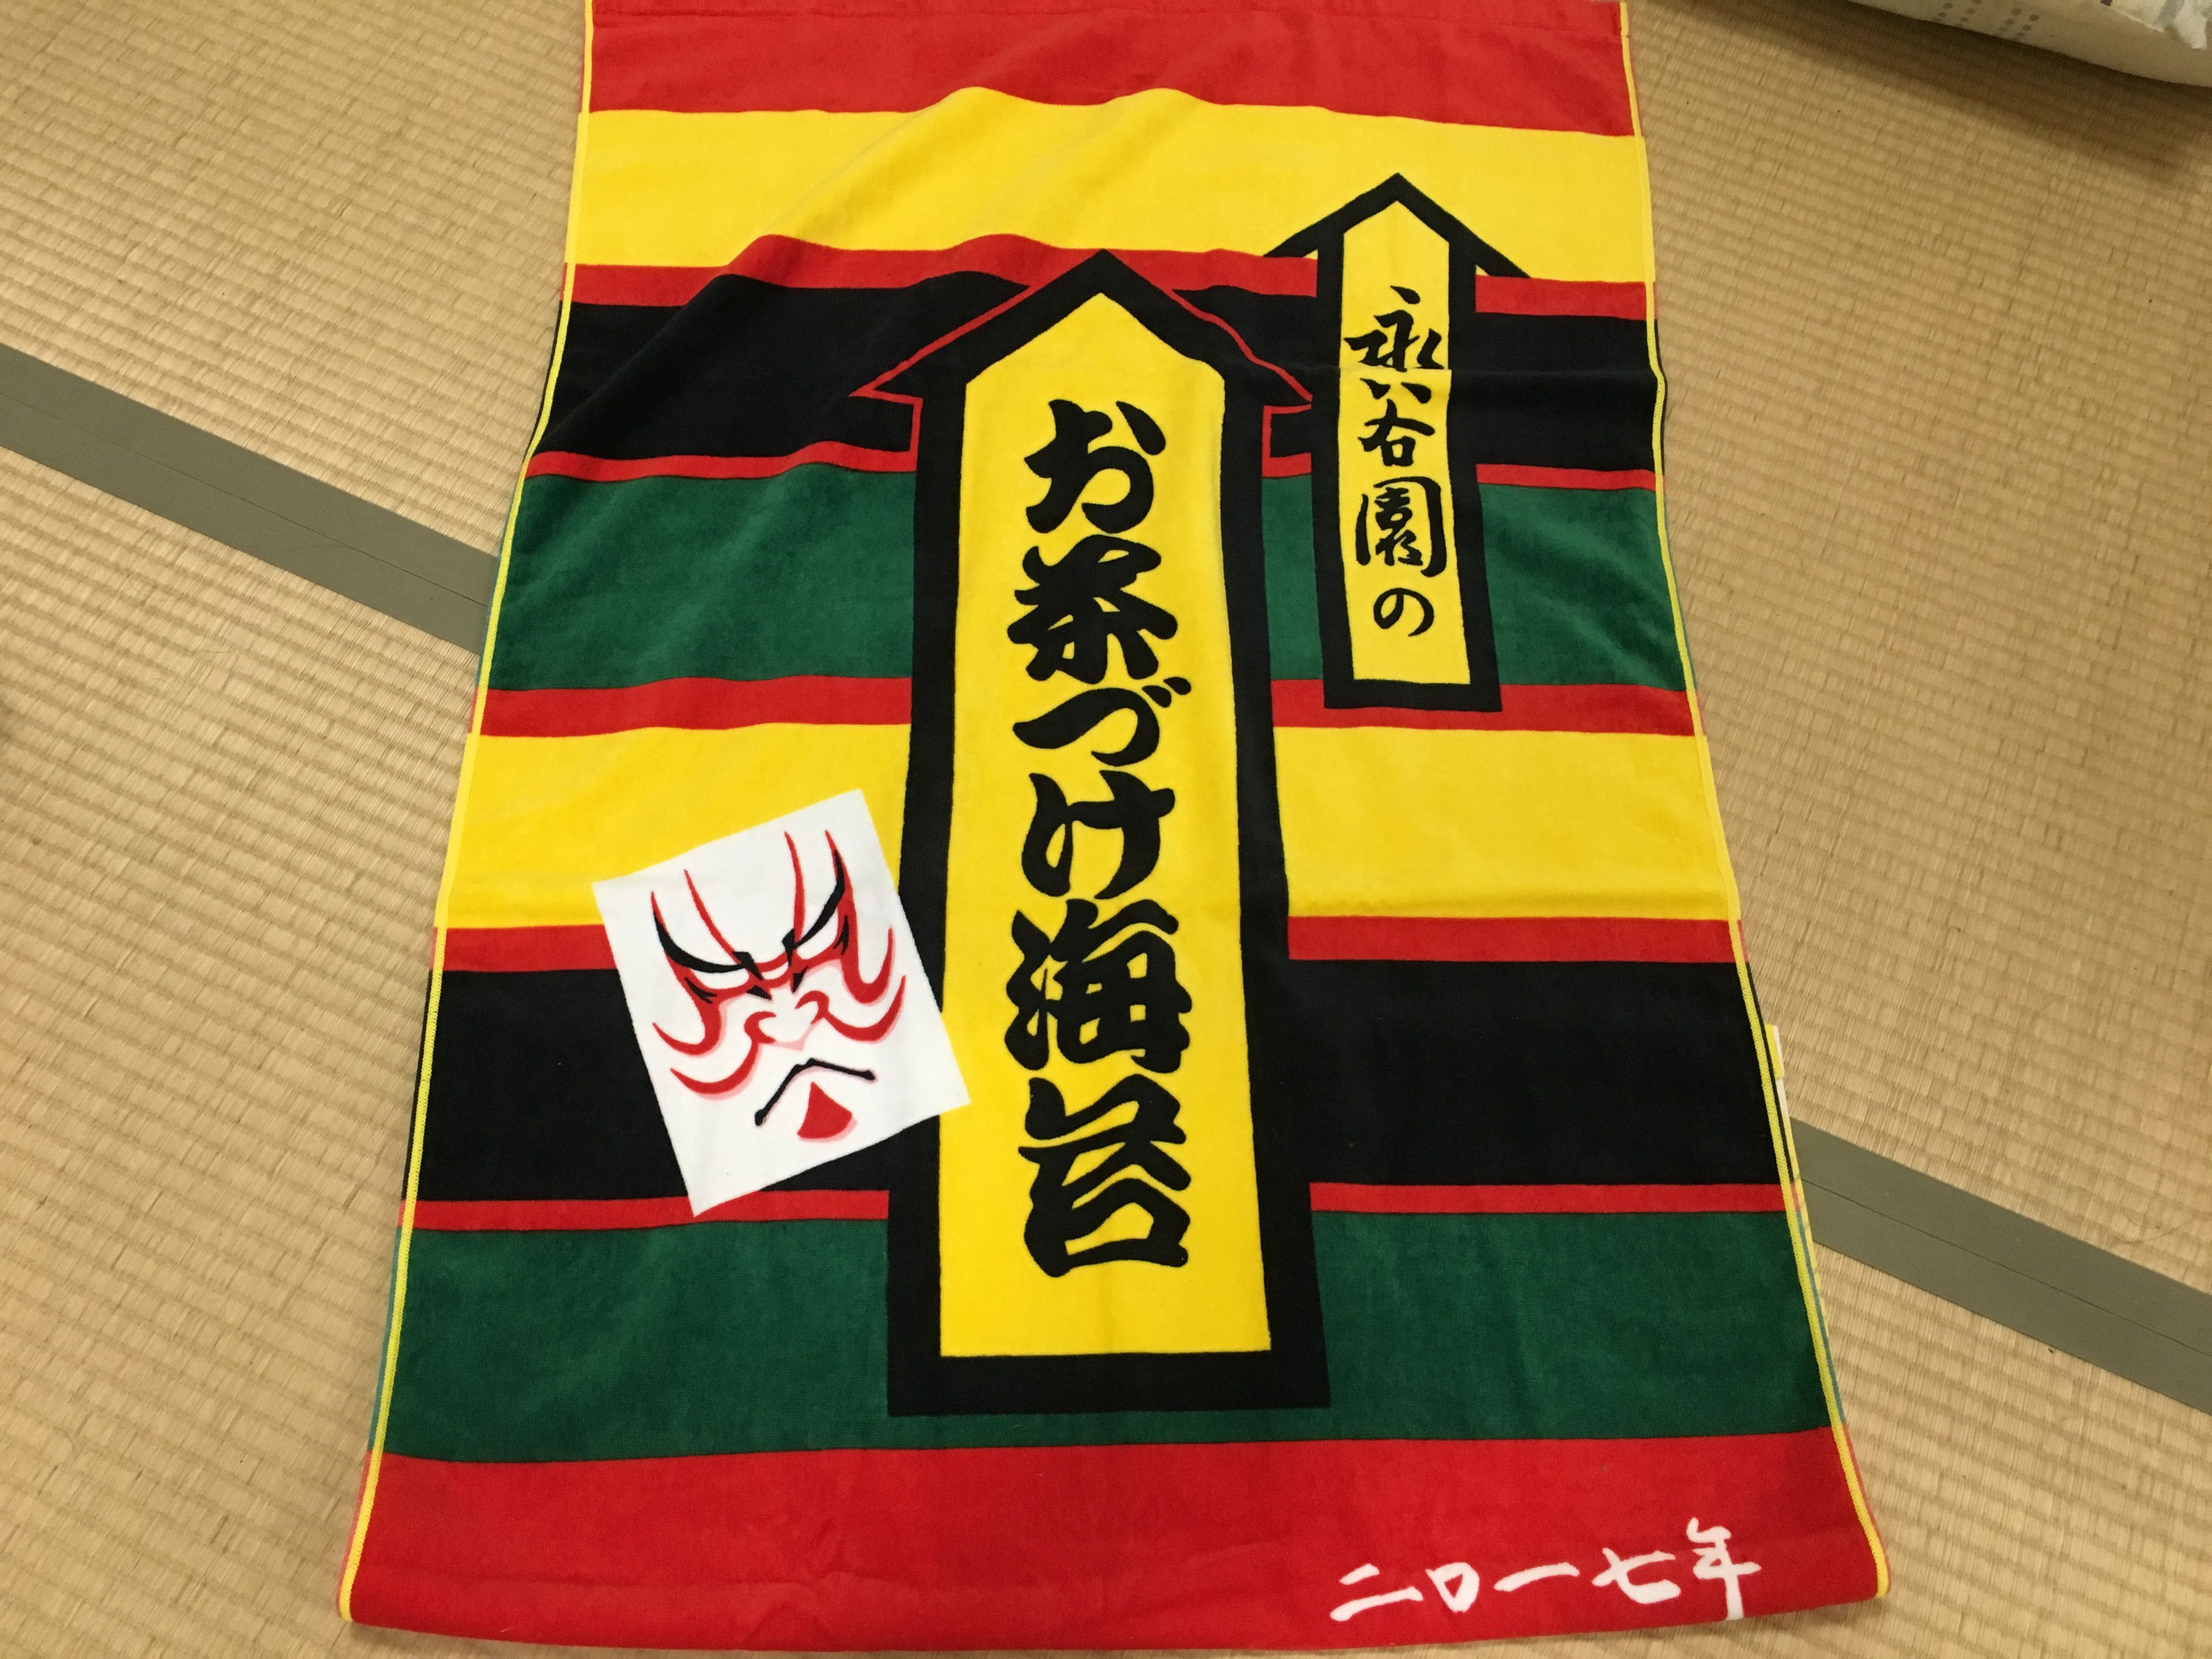 永谷園の商品で遠藤関のバスタオルが当たるぞ！！ | カメコリーの懸賞